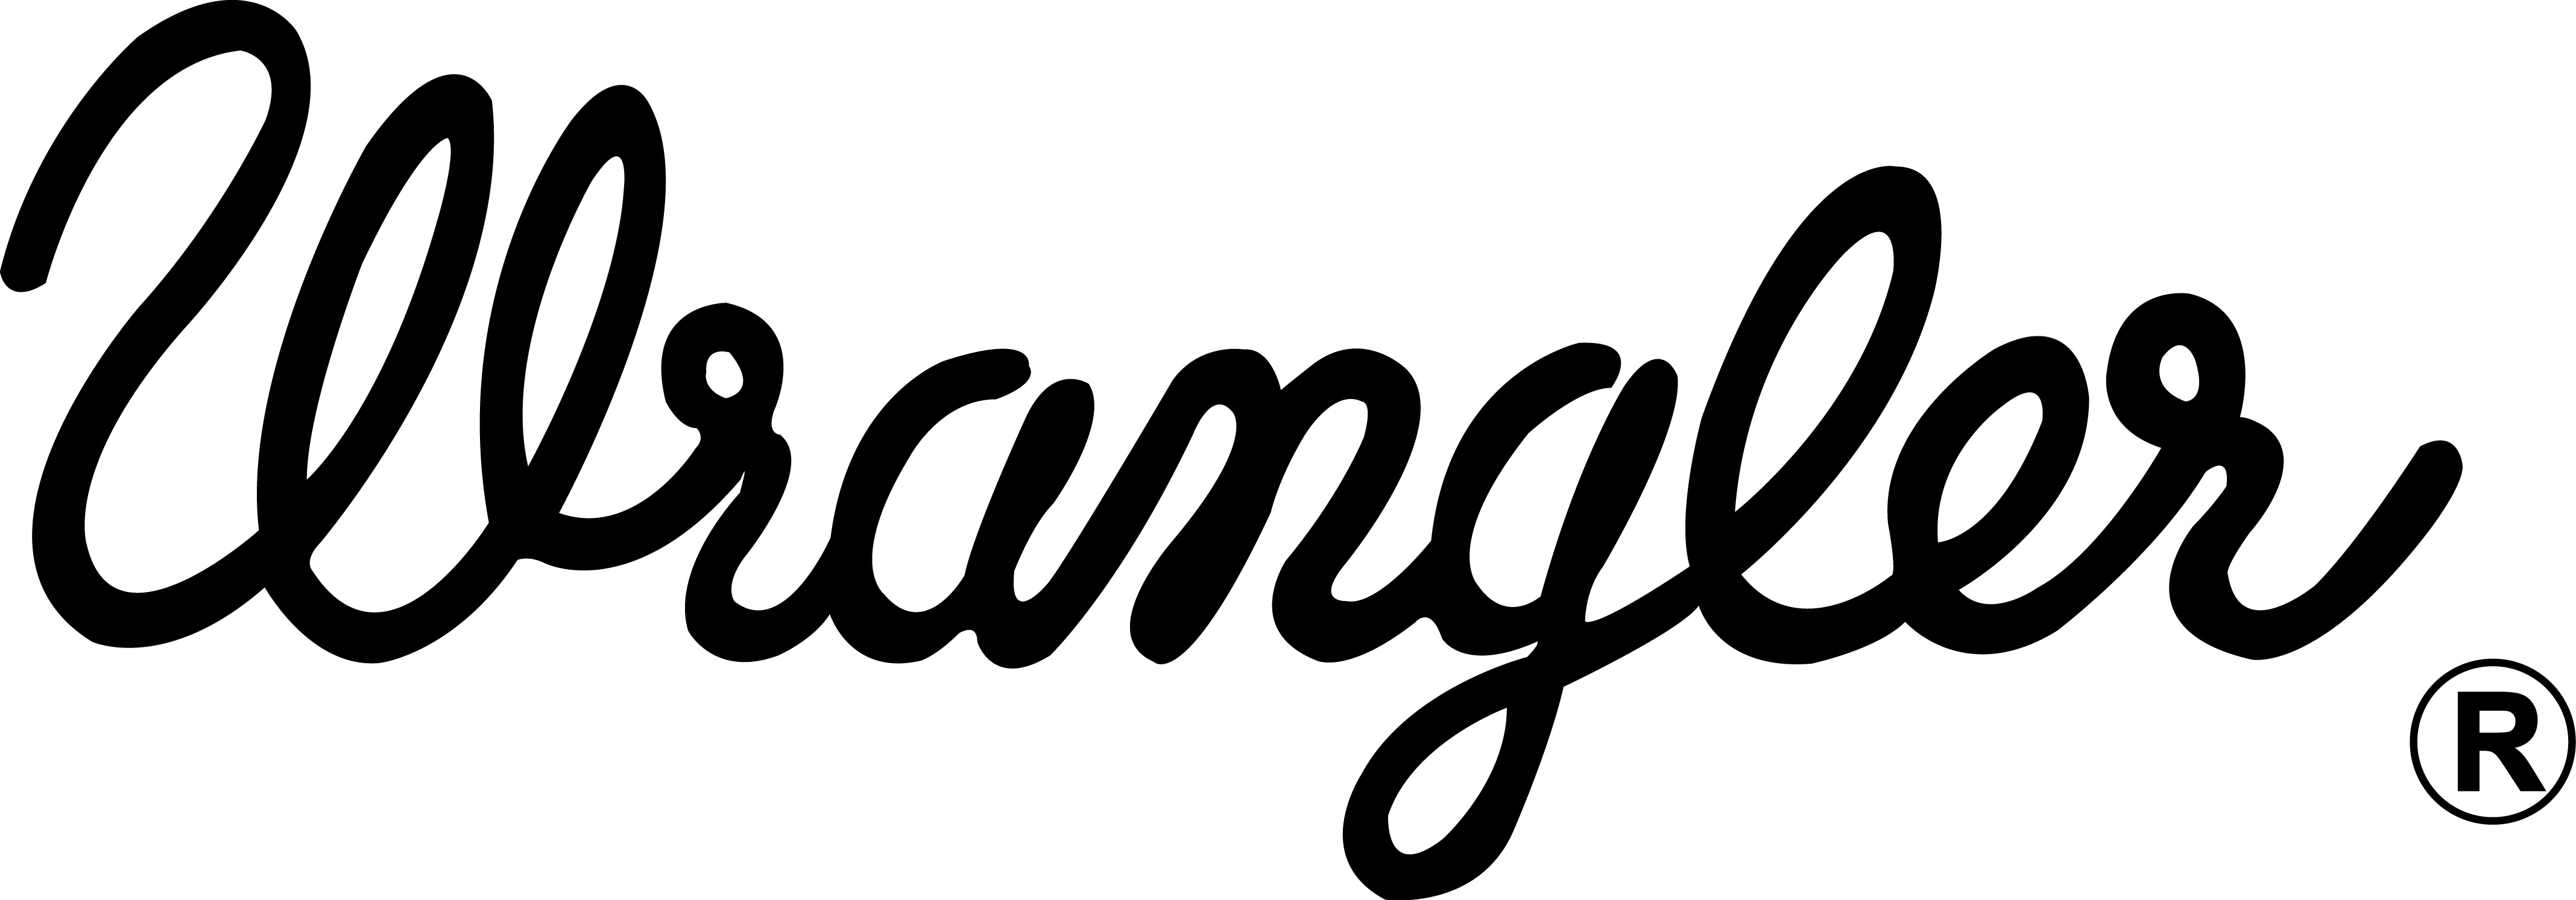 Wrangler Logos.